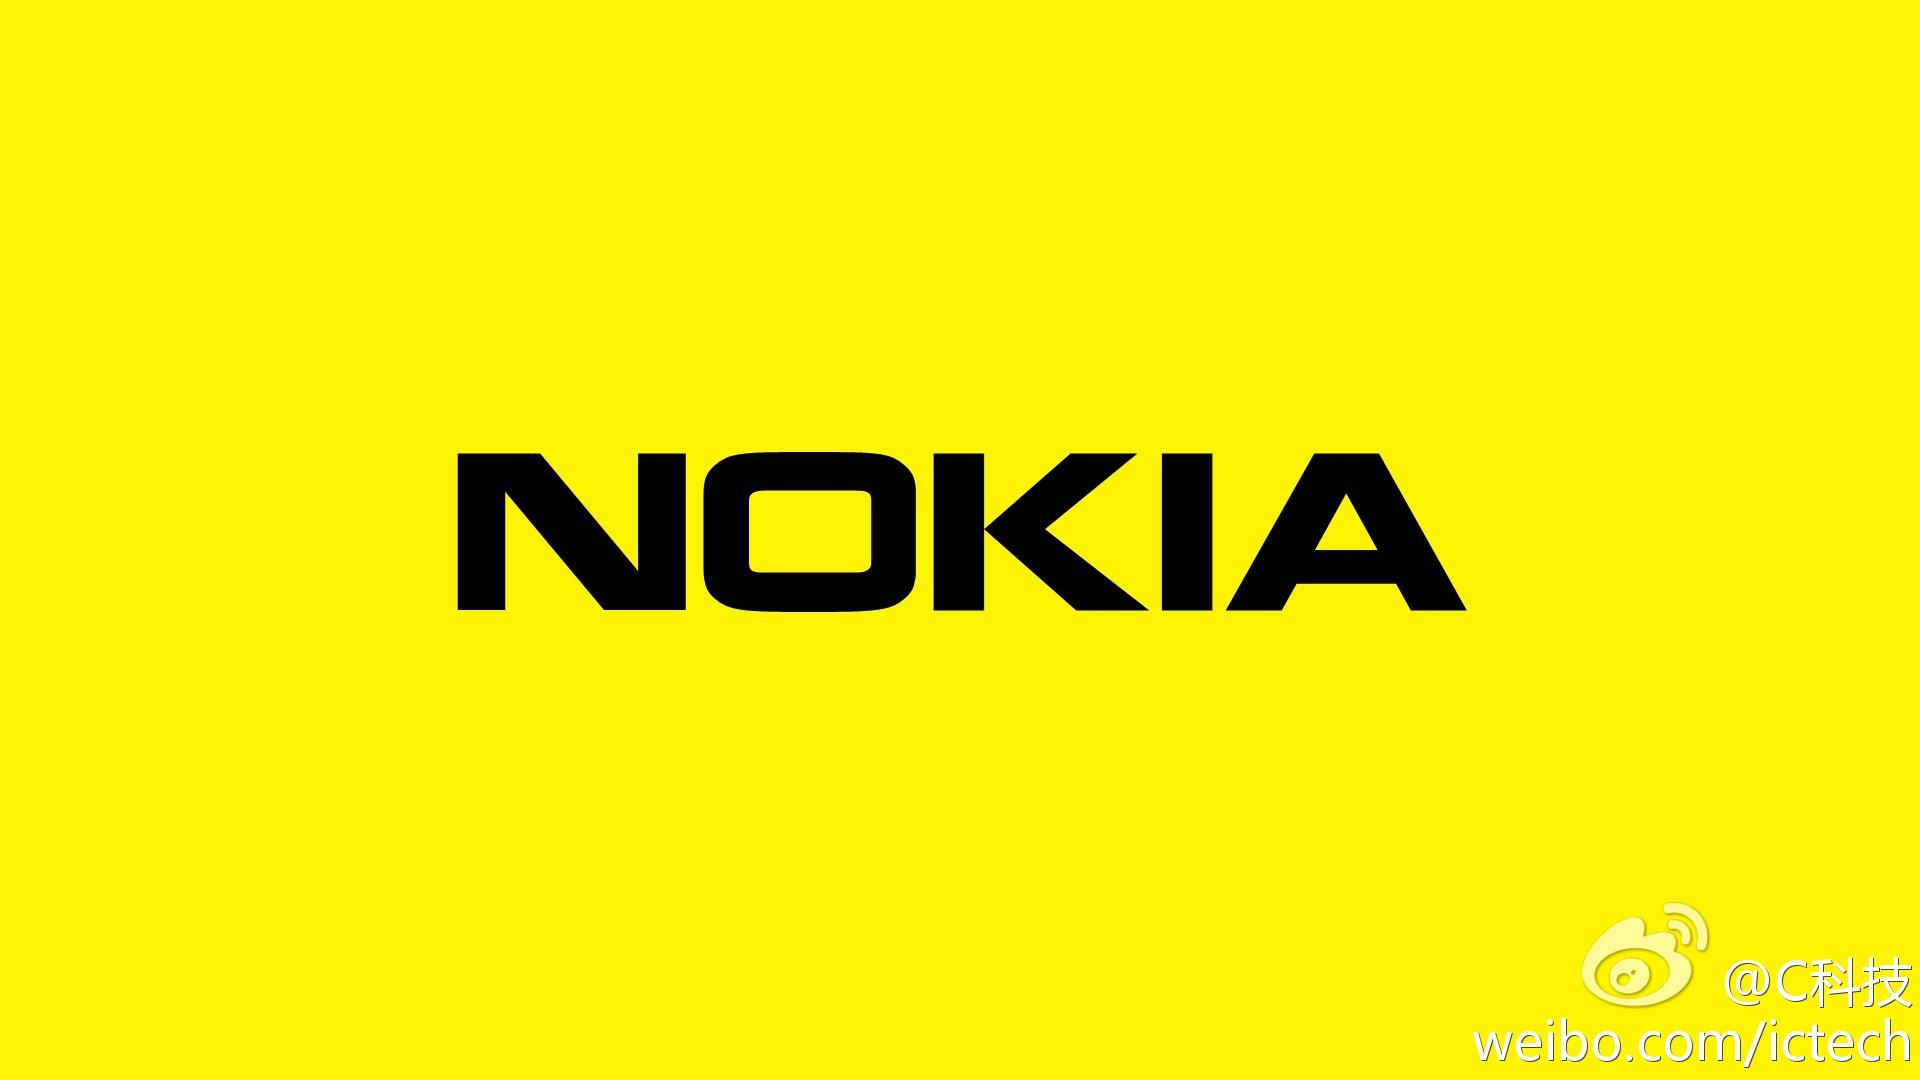 Tải hình nền Nokia 1280 - Hình nền đẹp điện thoại Nokia 1280